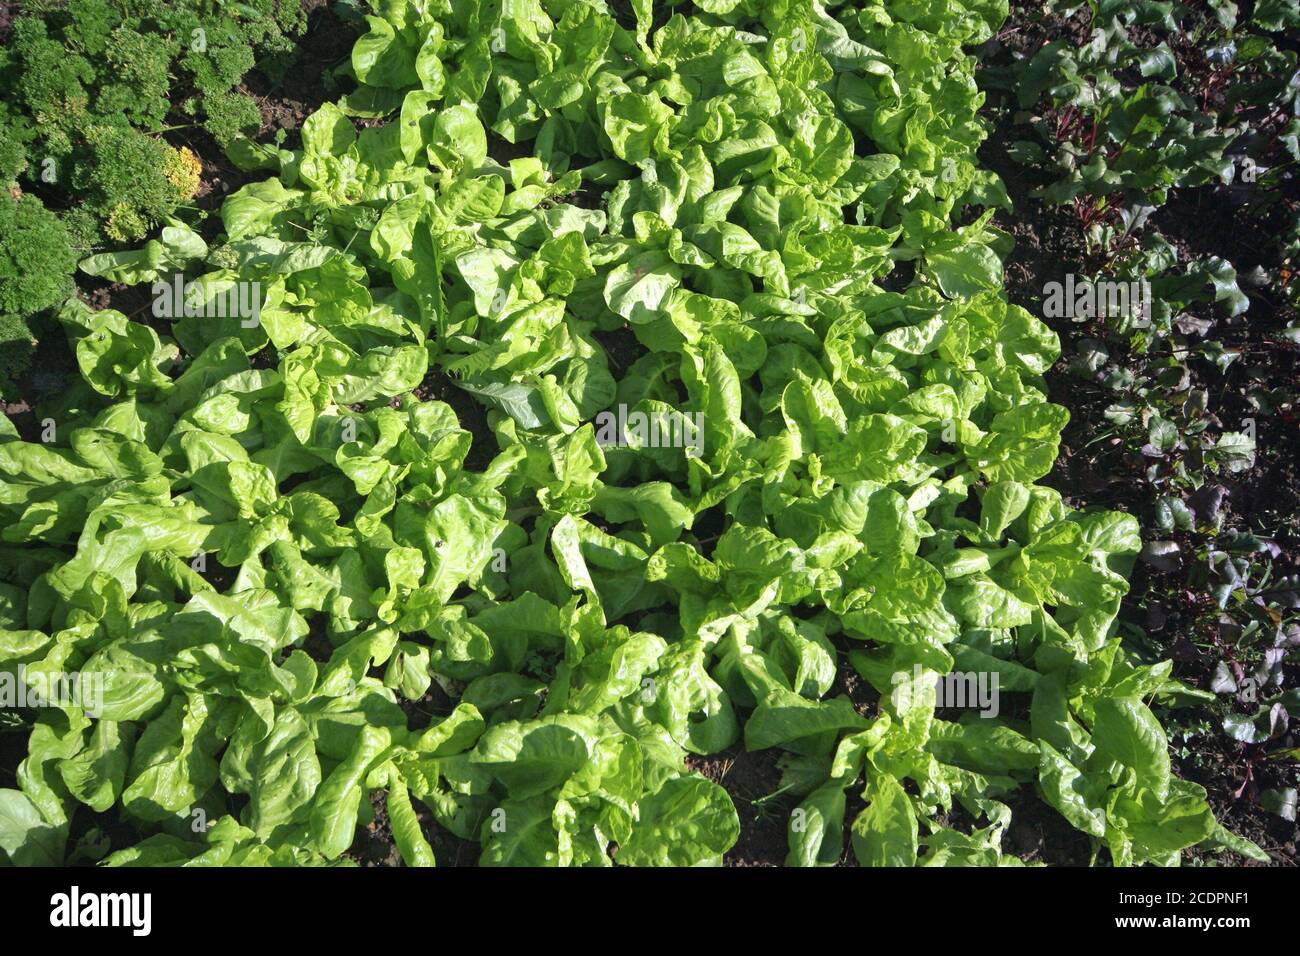 salad in a garden Stock Photo